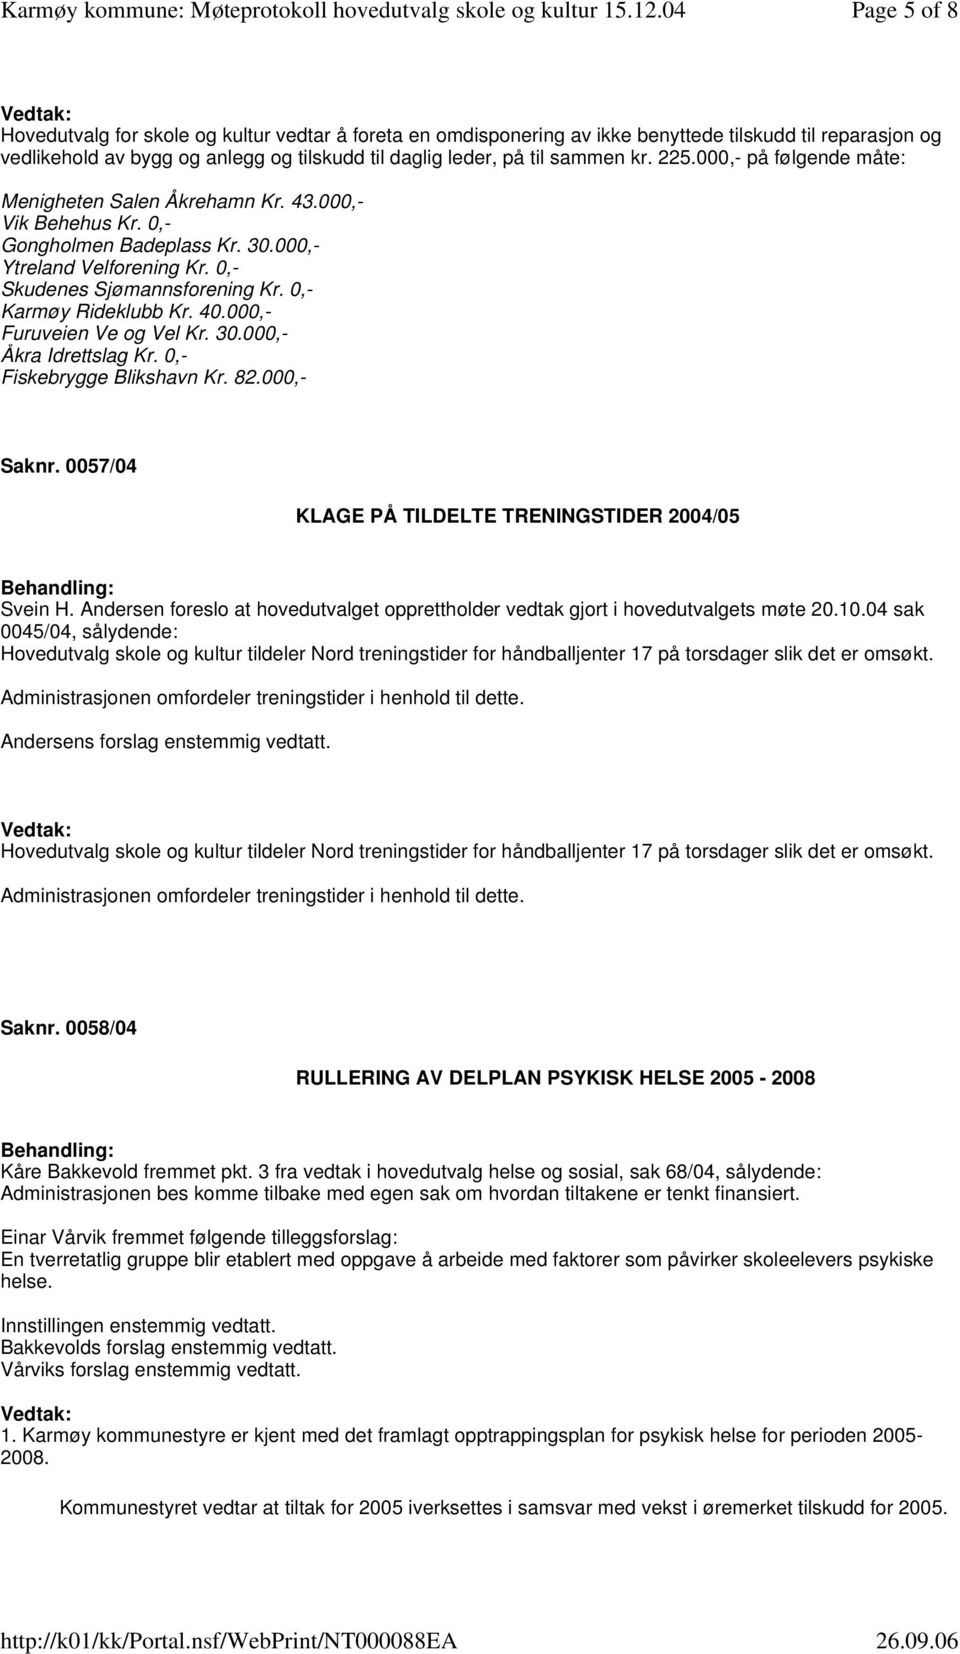 0,- Karmøy Rideklubb Kr. 40.000,- Furuveien Ve og Vel Kr. 30.000,- Åkra Idrettslag Kr. 0,- Fiskebrygge Blikshavn Kr. 82.000,- Saknr. 0057/04 KLAGE PÅ TILDELTE TRENINGSTIDER 2004/05 Svein H.